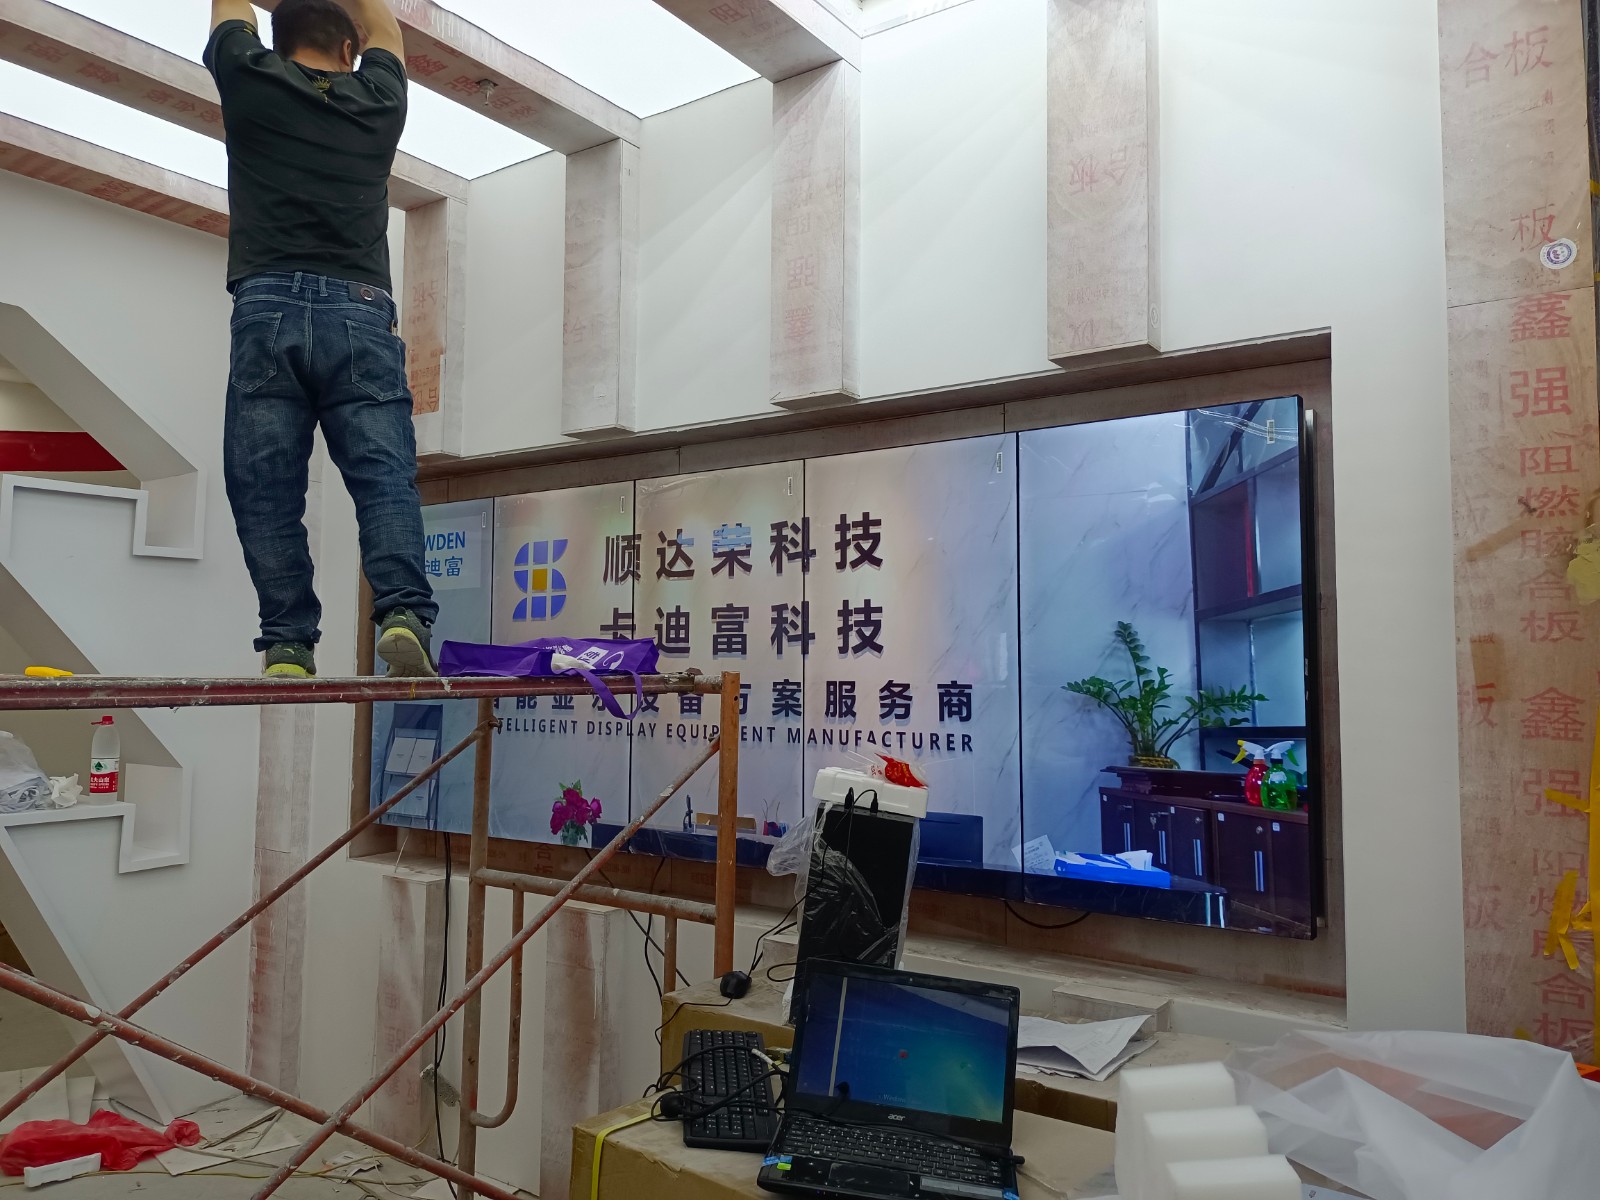 湖北宜昌电力公司展厅会议展示ray竞技app
安装